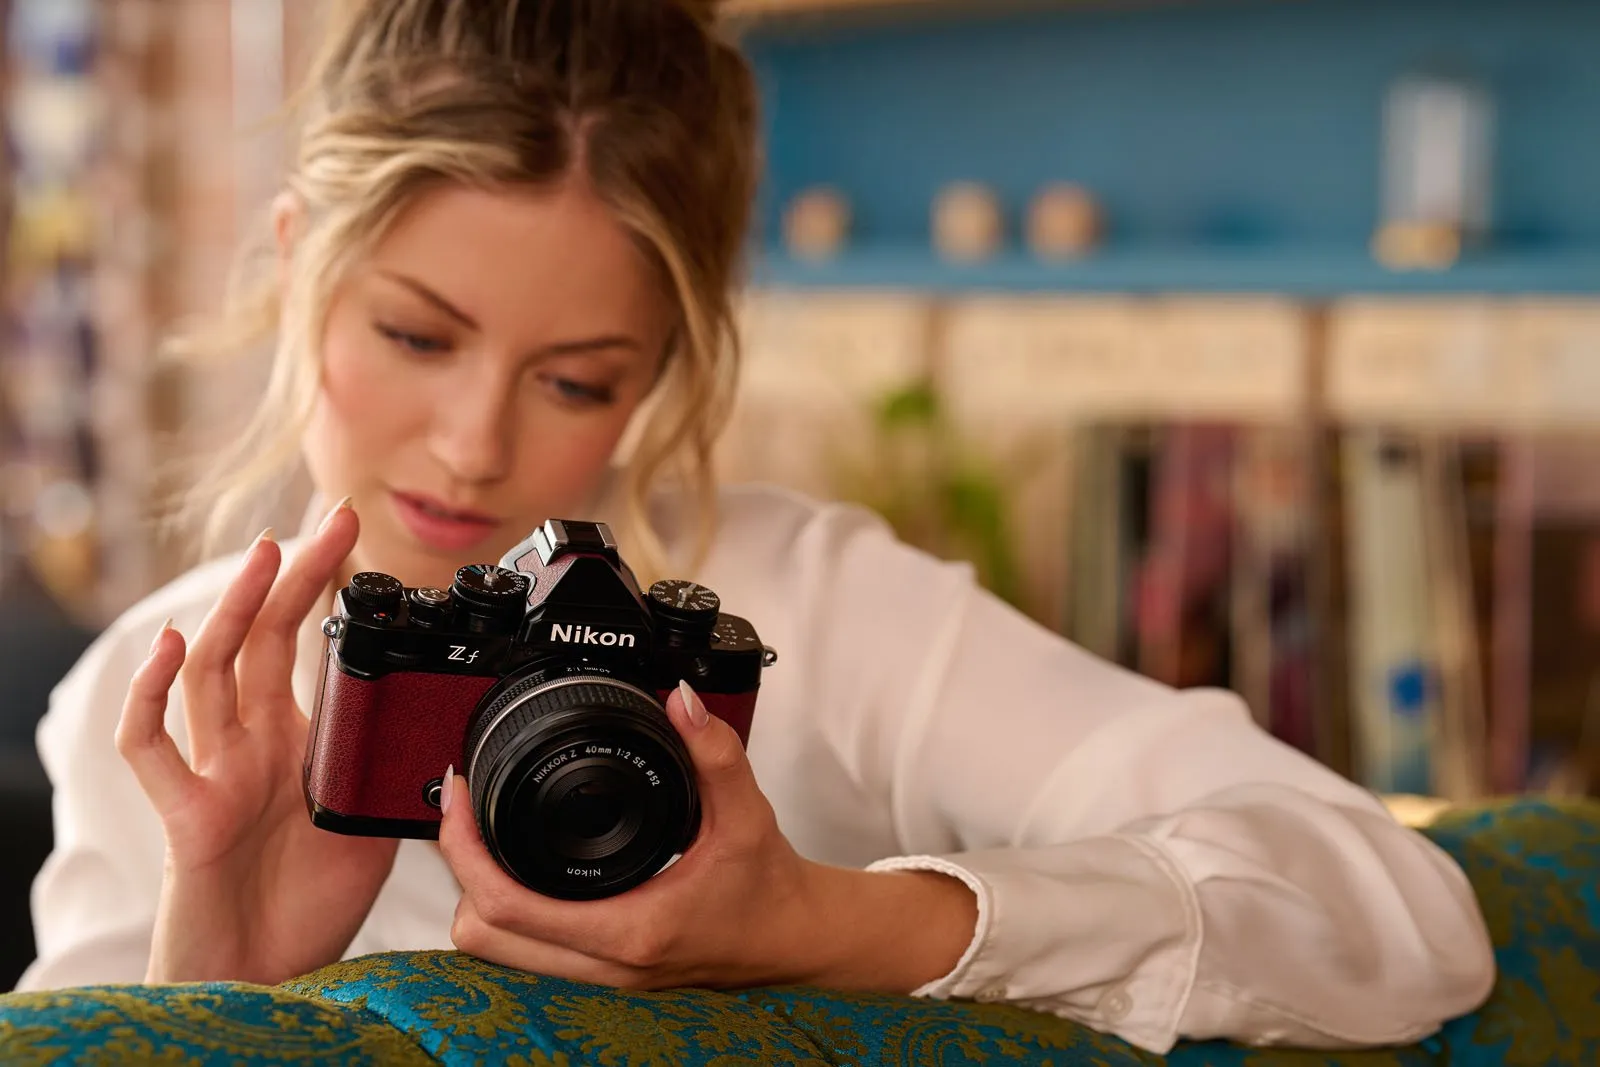 Nikon Zf ra mắt với kiểu dáng hoài cổ, trang bị cảm biến full frame 24.5MP